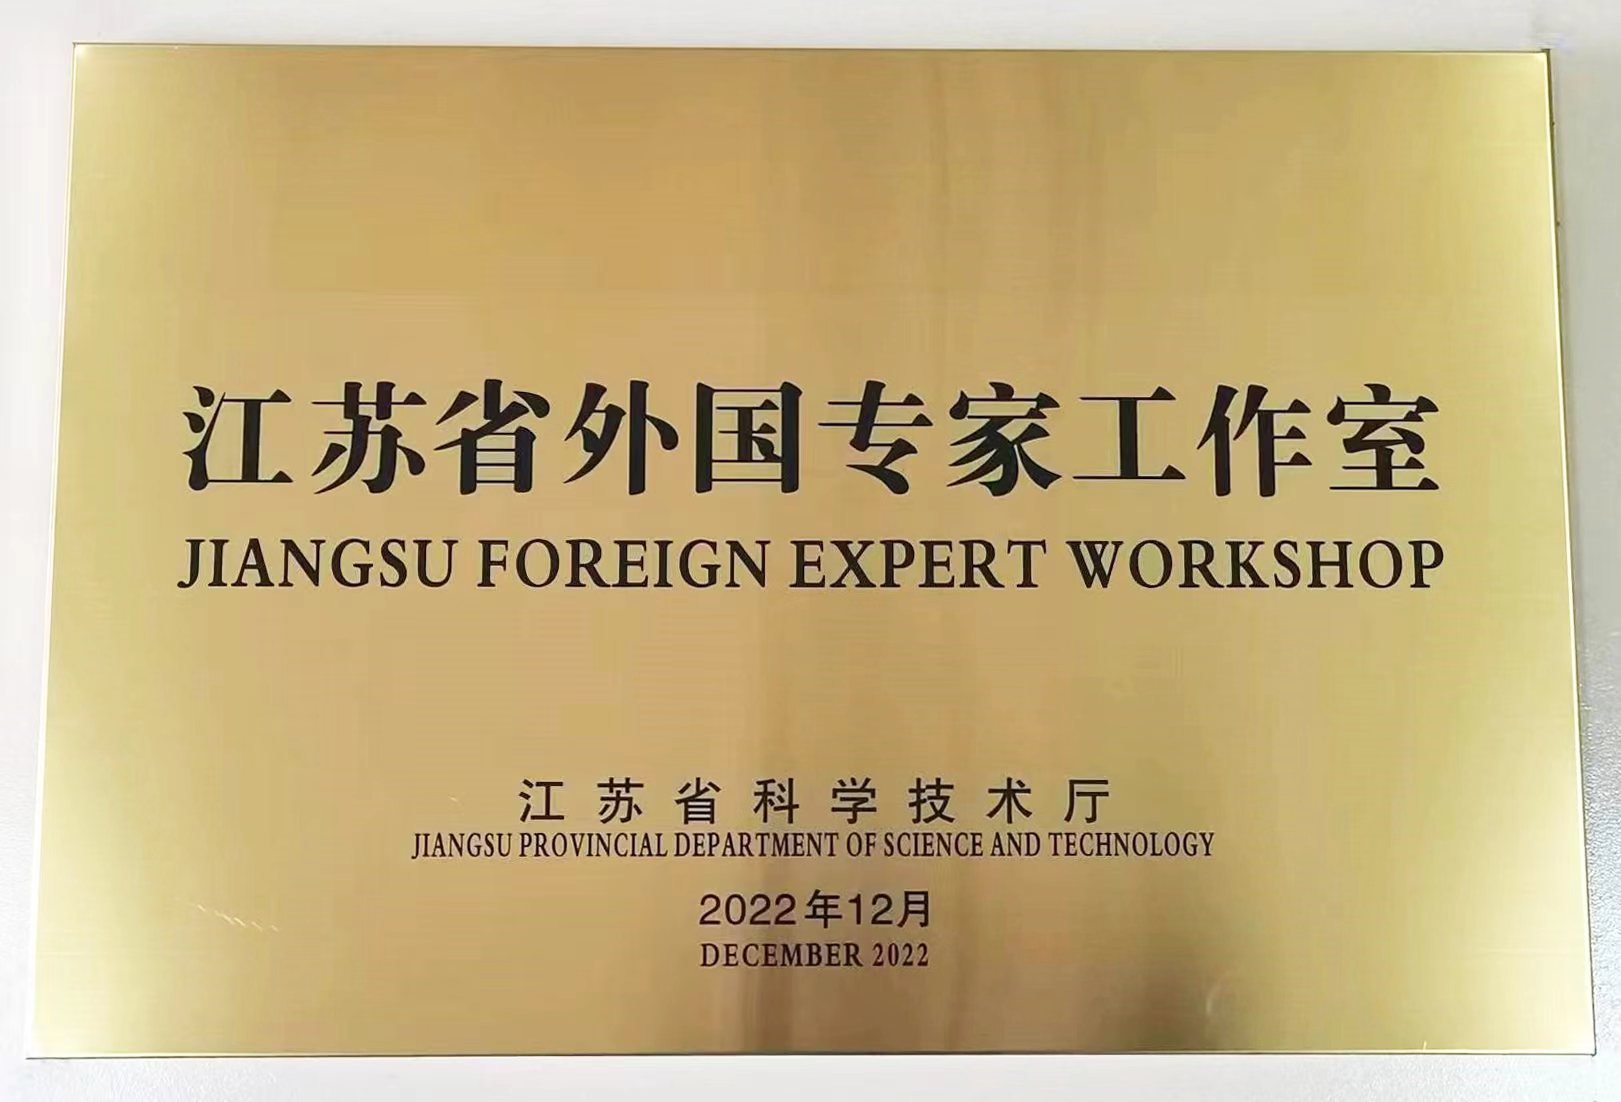 省级荣誉！扬州福克斯荣获“江苏省外国专家工作室”